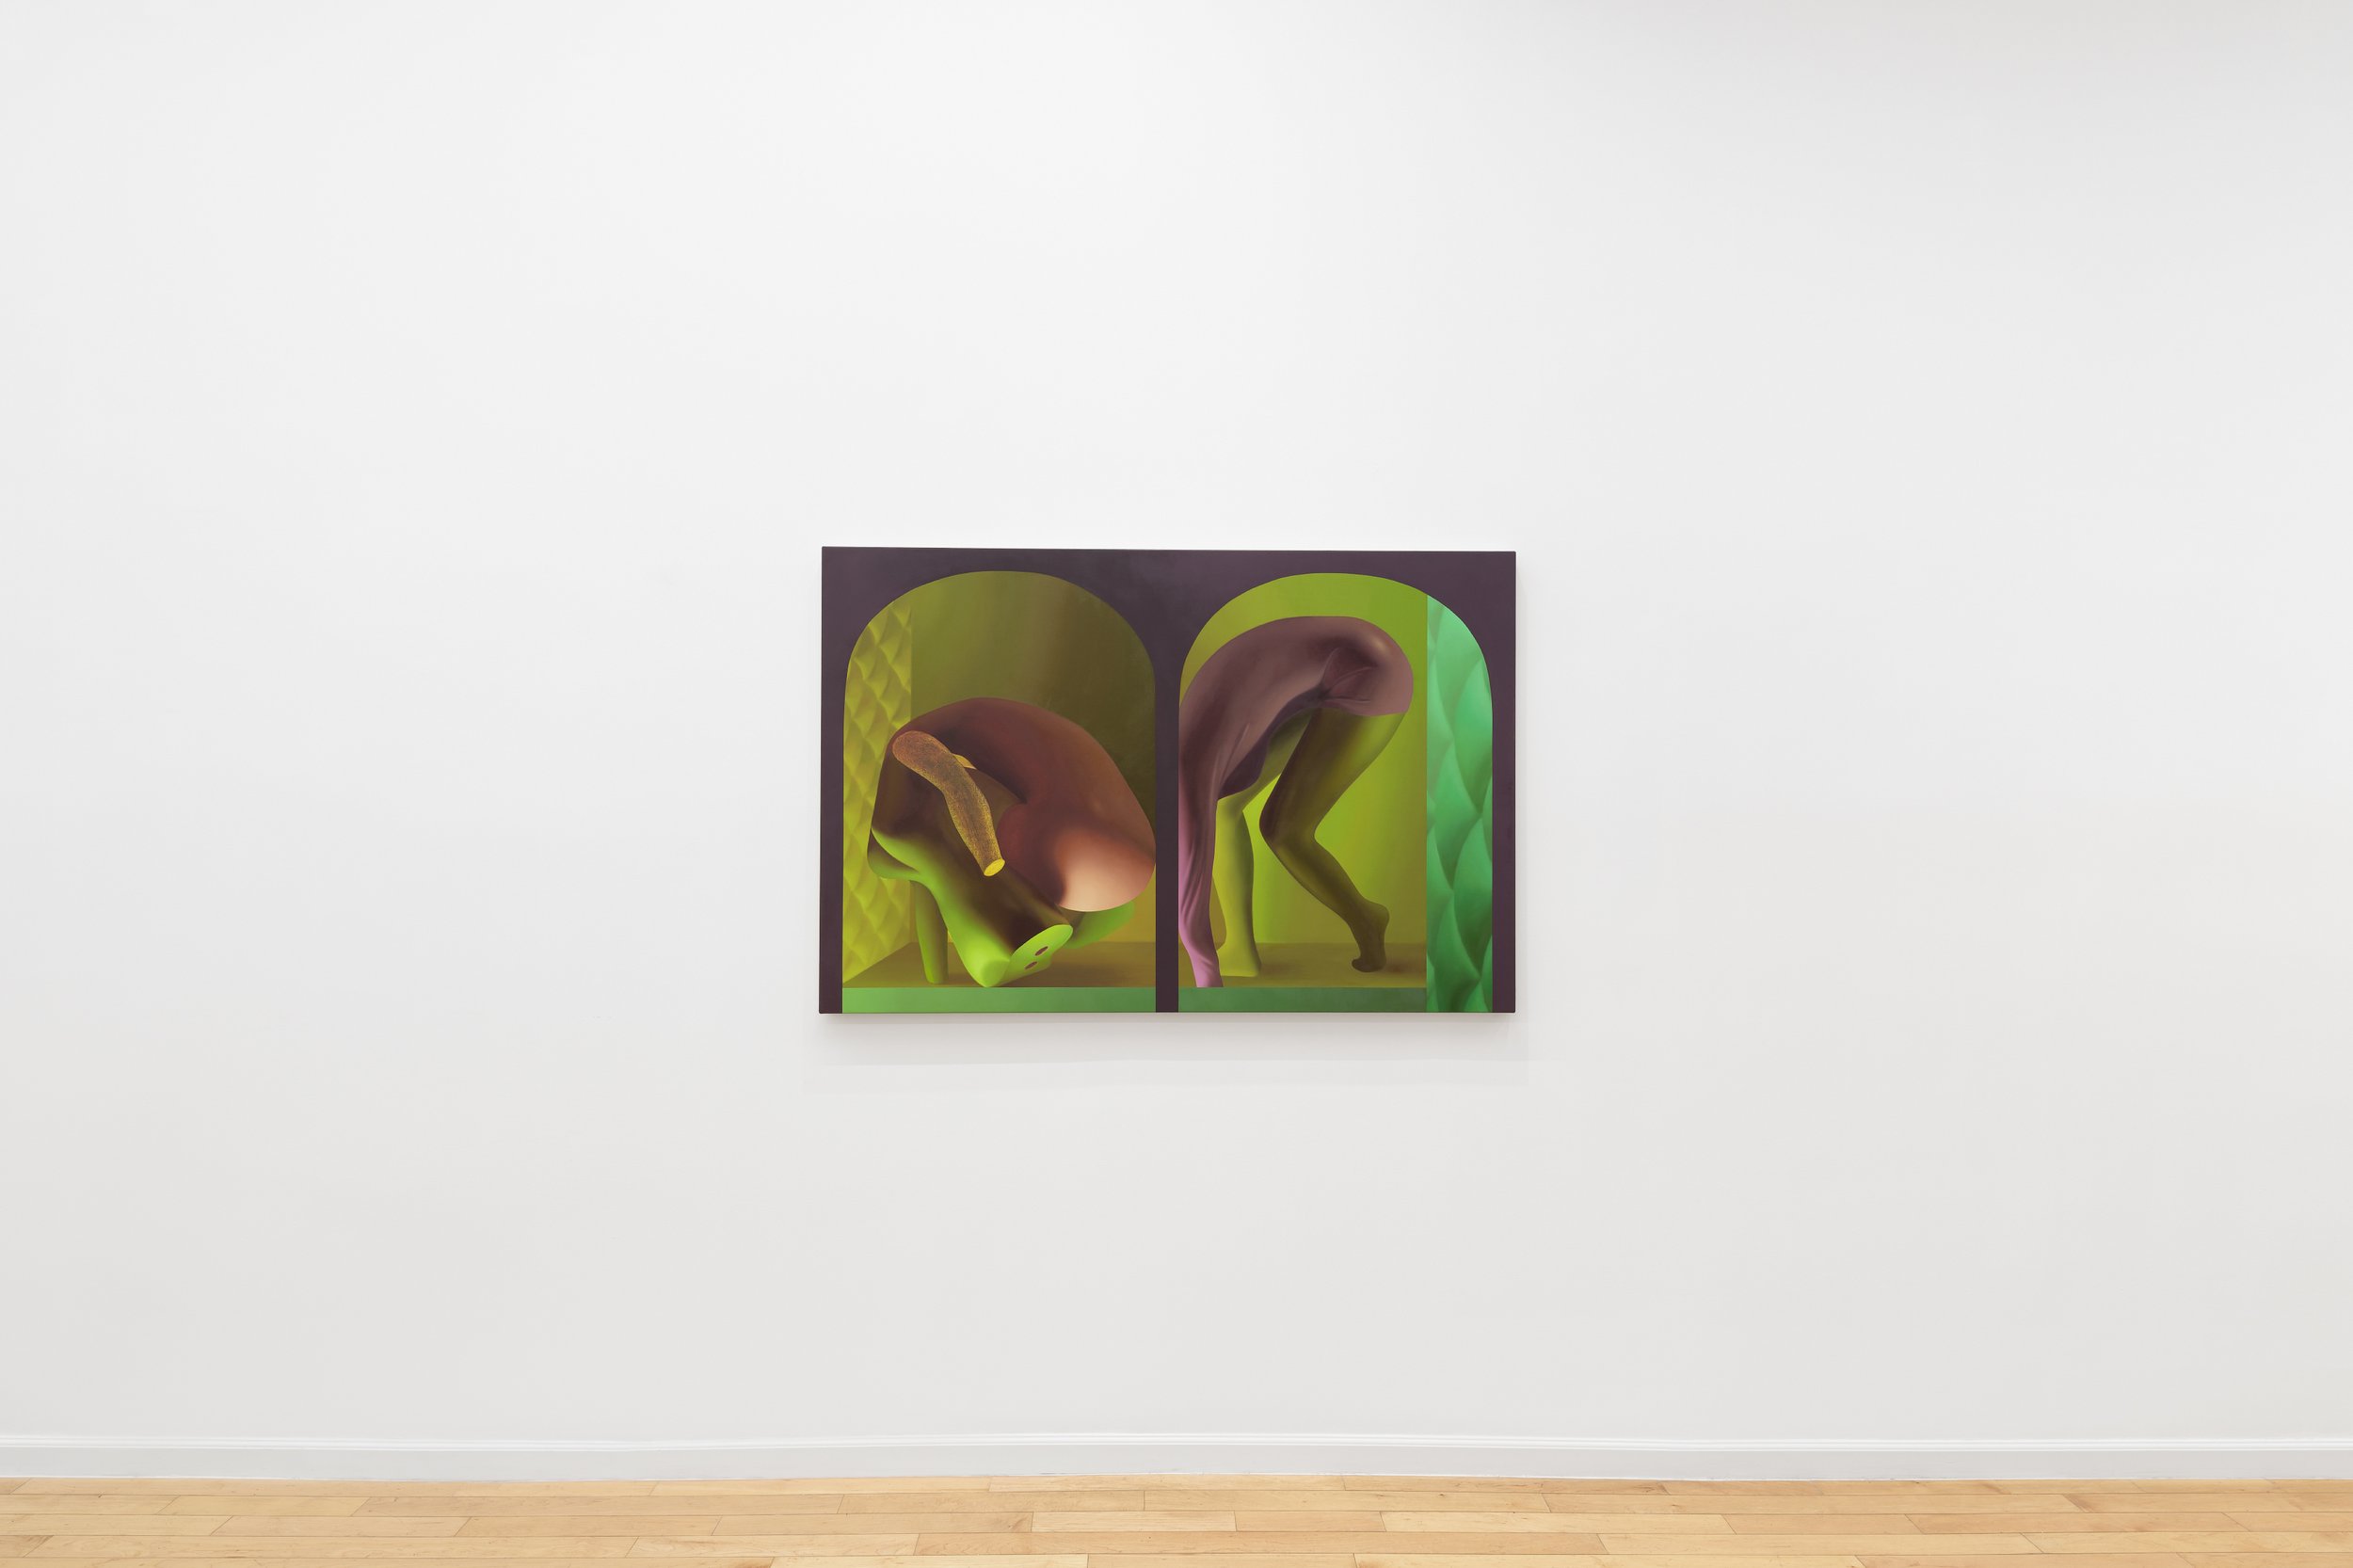 1969 Gallery, Kate Meissner, Chromasome DSF0046.jpg